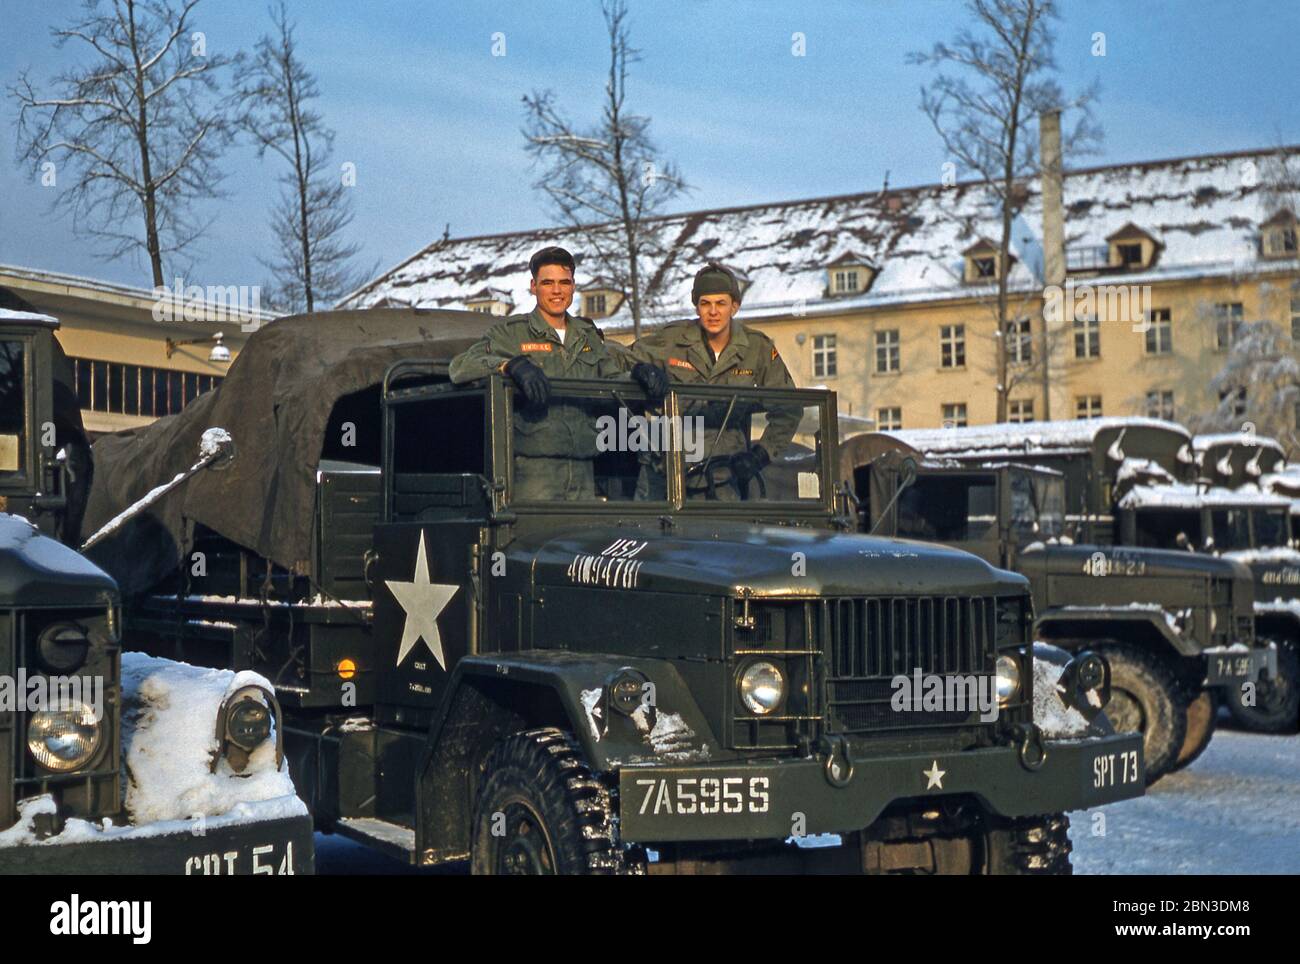 MITTE der 1950er Jahre stationierte US-Armee-Soldaten in Deutschland – zwei Mitglieder der 160. Signalgruppe sind auf einem Militärfahrzeug im Winterschnee abgebildet. Ab 1955 war die 160ste Signal Group in der Nachkriegszeit unter der 7. US-Armee deutschlandweit in der Panzerkaserne (PK) in Böblingen (Böblingen) bei Stuttgart tätig. Das Hauptquartier der 7. US-Armee befand sich in der Nähe der Patch Barracks. Stockfoto